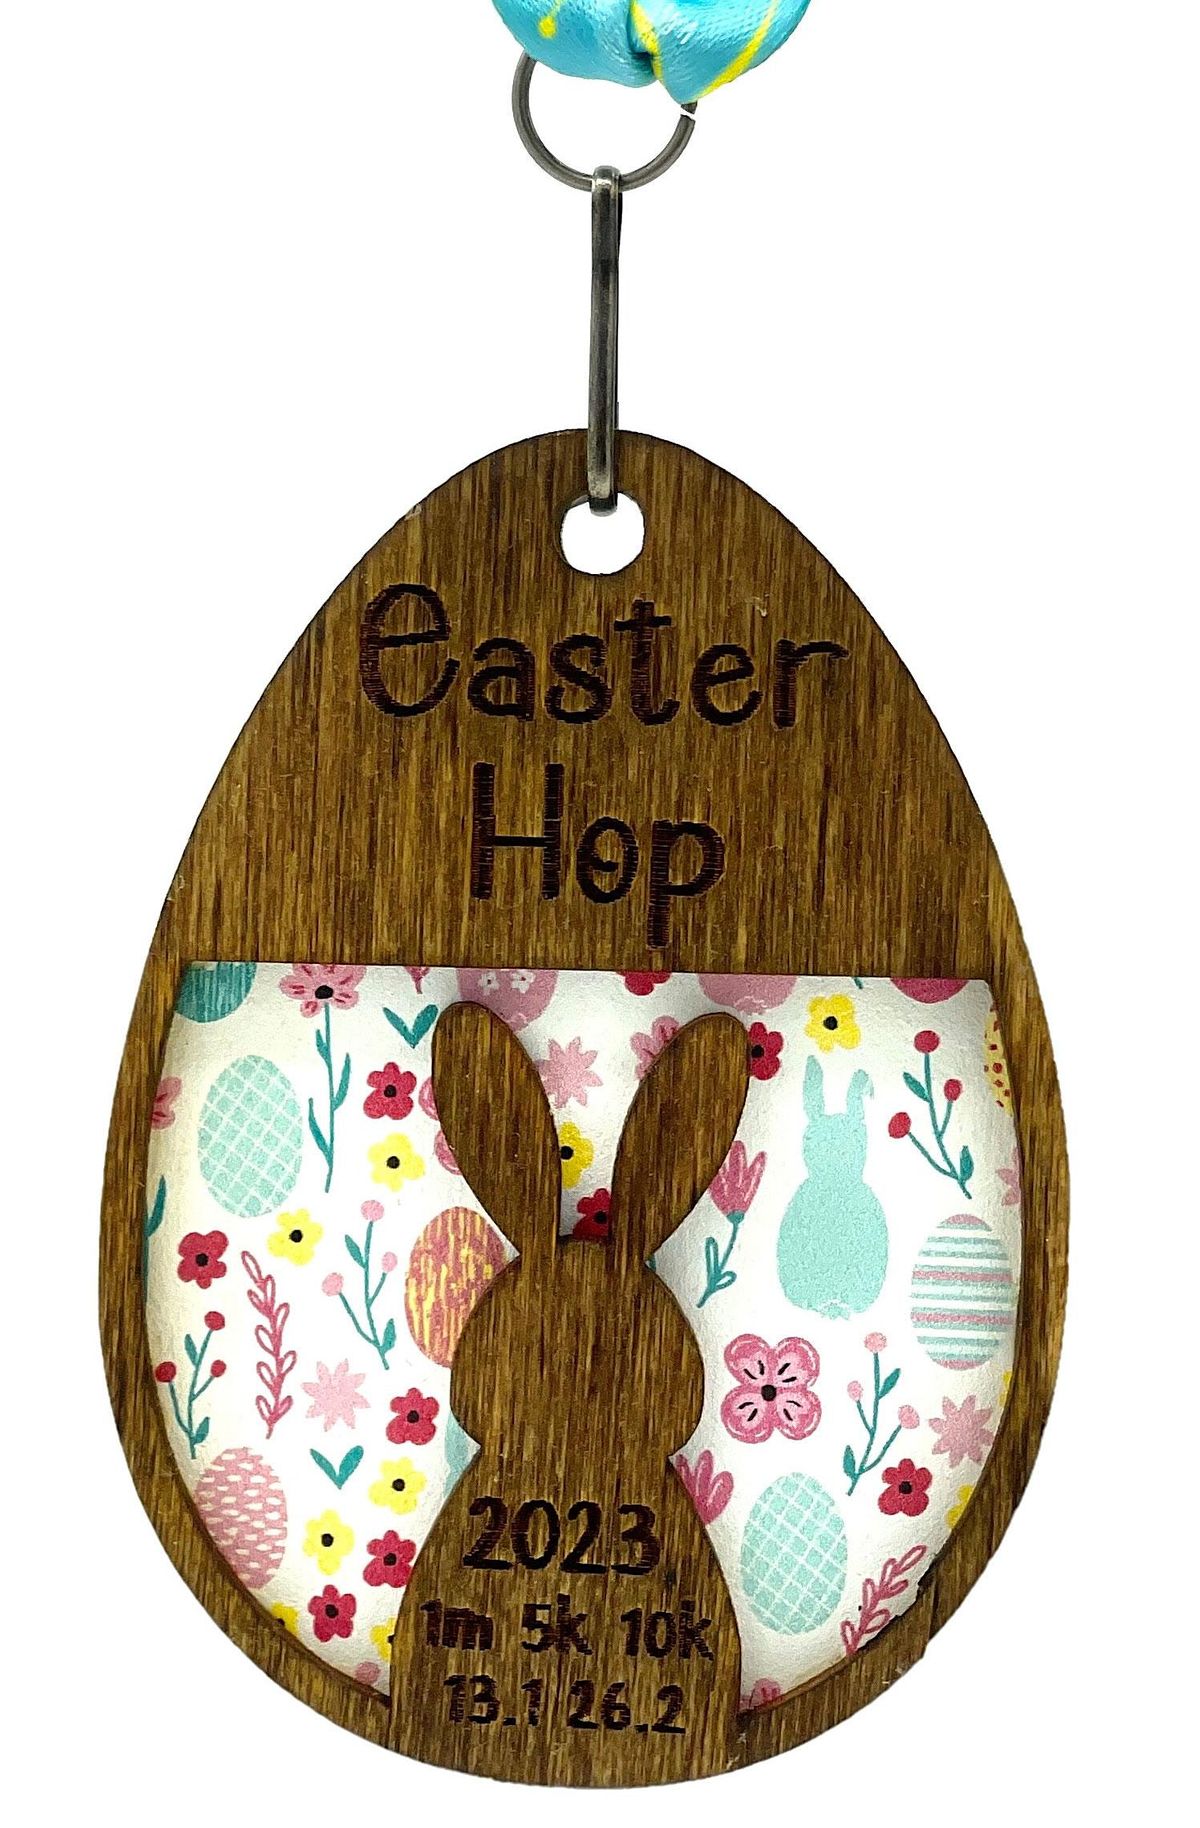 Easter Hop! 1M 5K 10K 13.1 26.2-Save $2